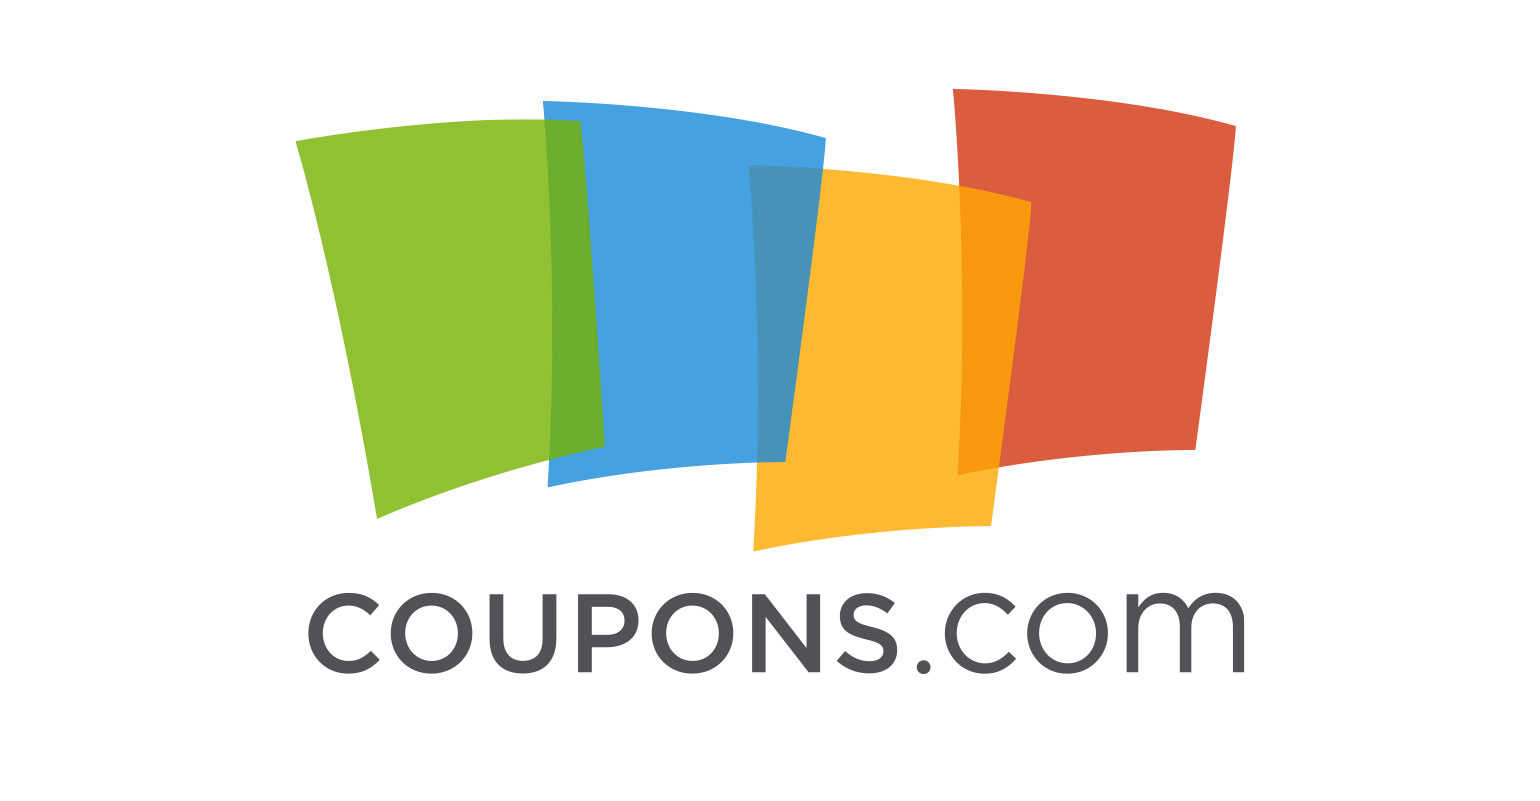 Coupons.com logo